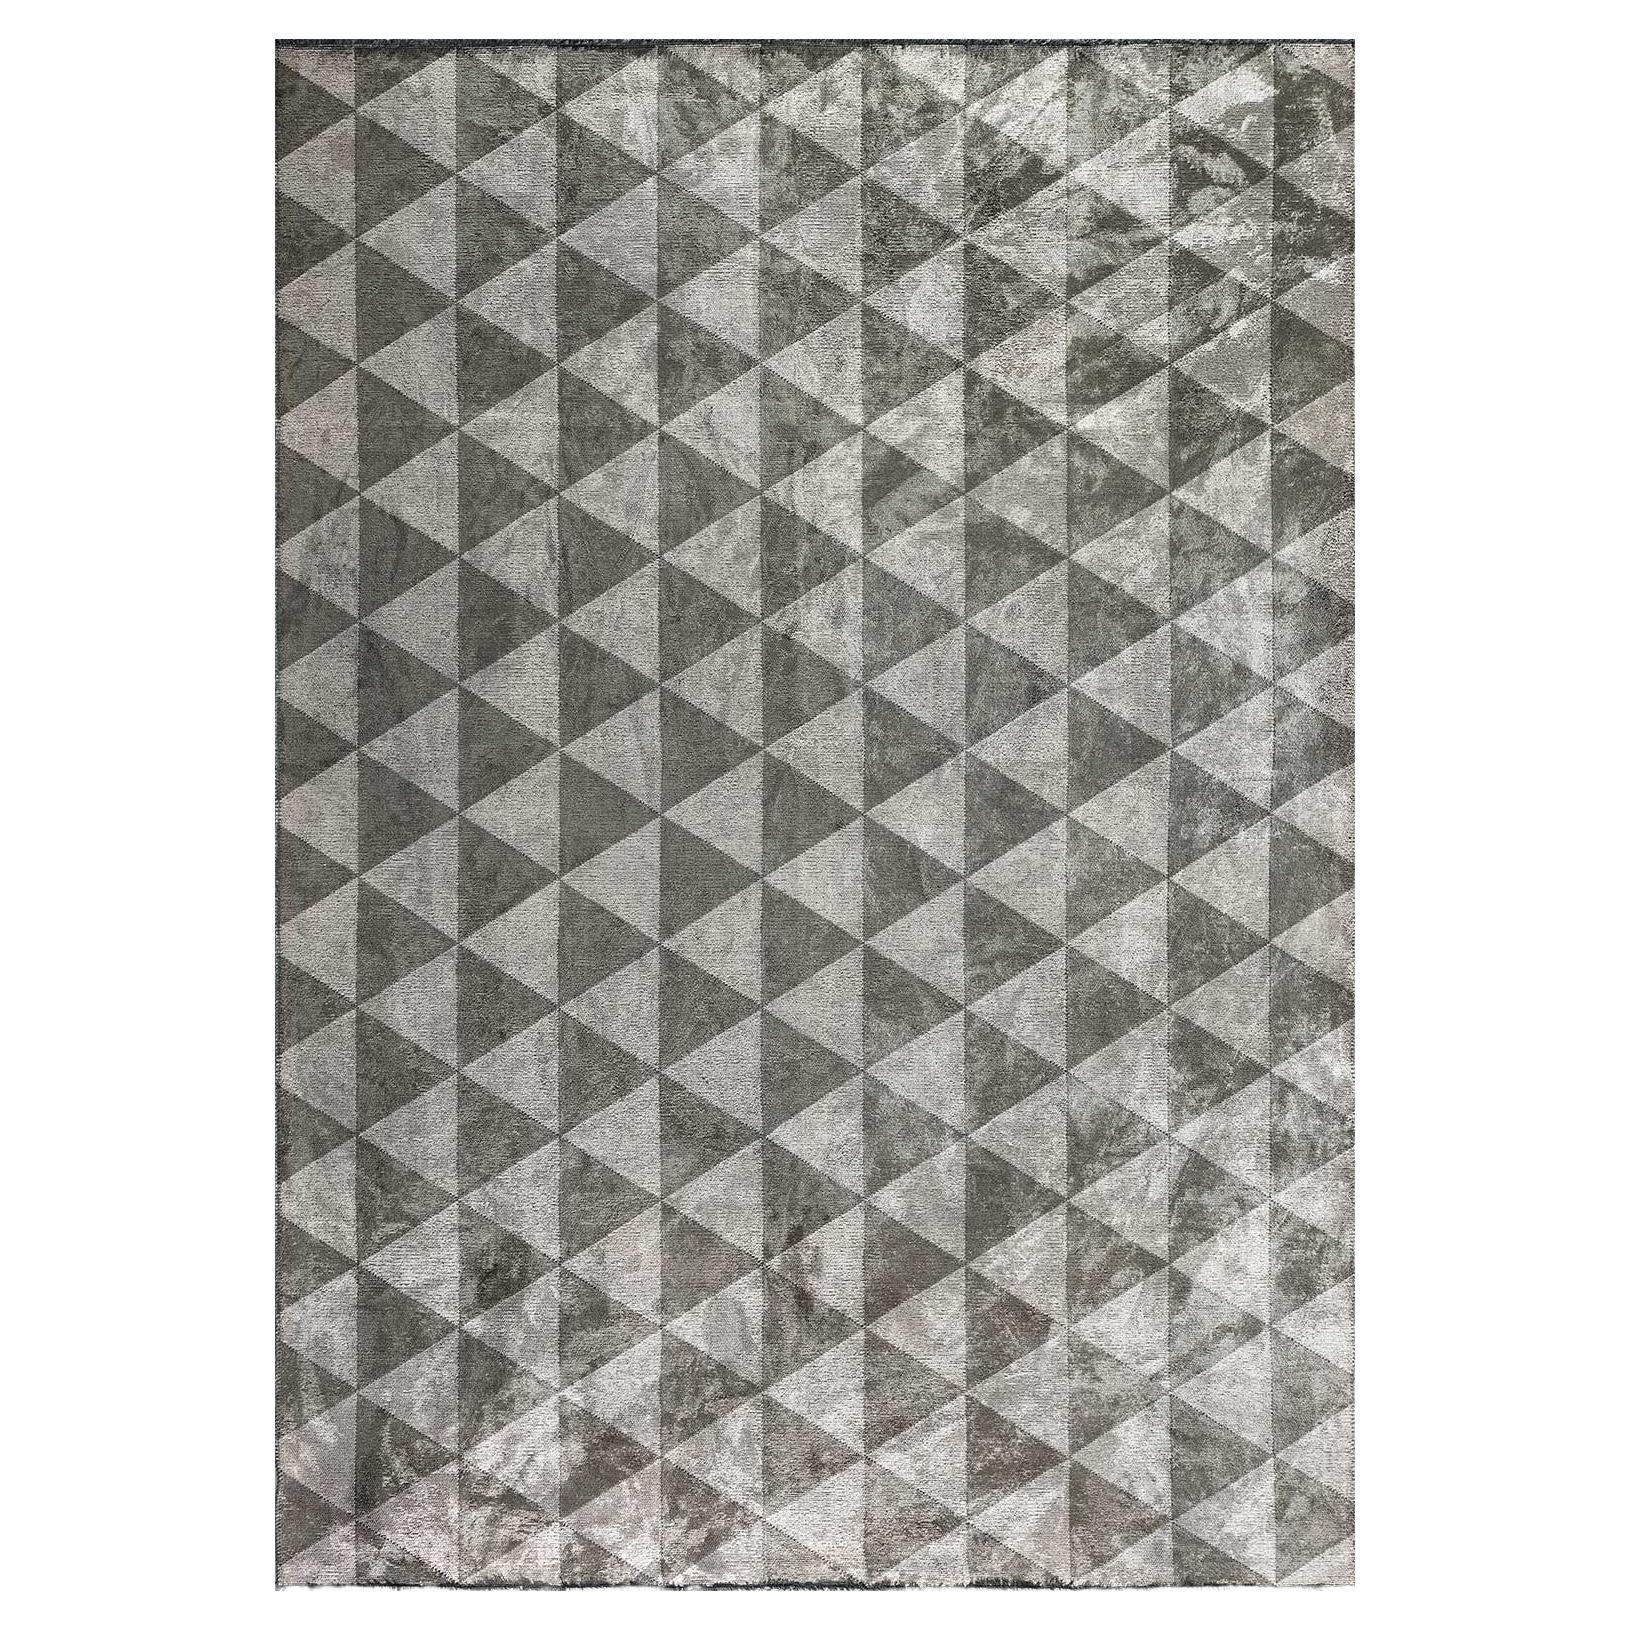 Tapis à motif géométrique de diamants triangles, gris argenté et brun kaki avec brillance